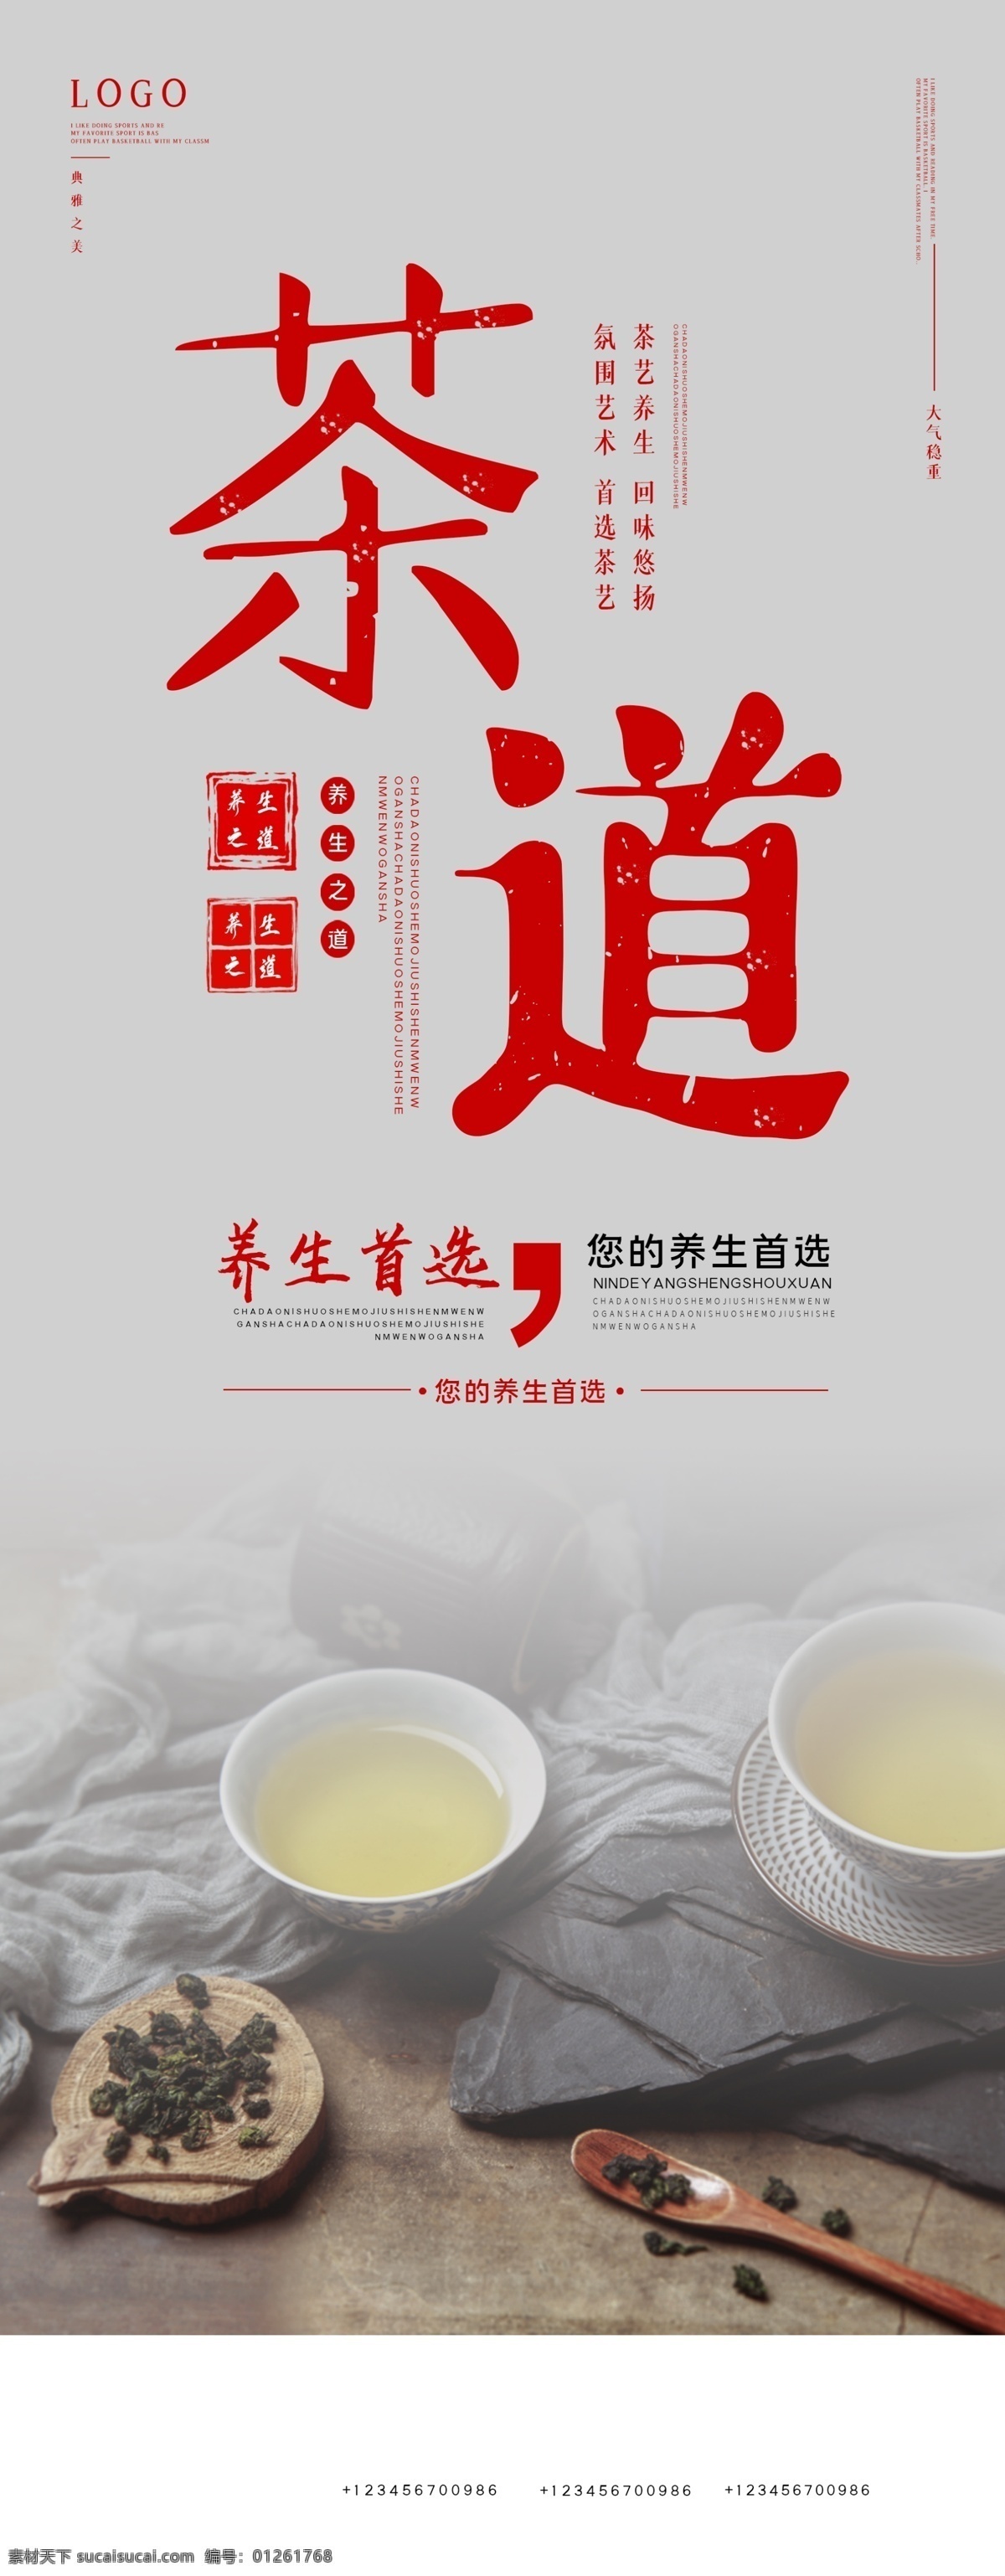 茶道图片 茶道文化 中国茶道 传统茶道 古代茶道 古代人物 下棋 对弈 茶文化